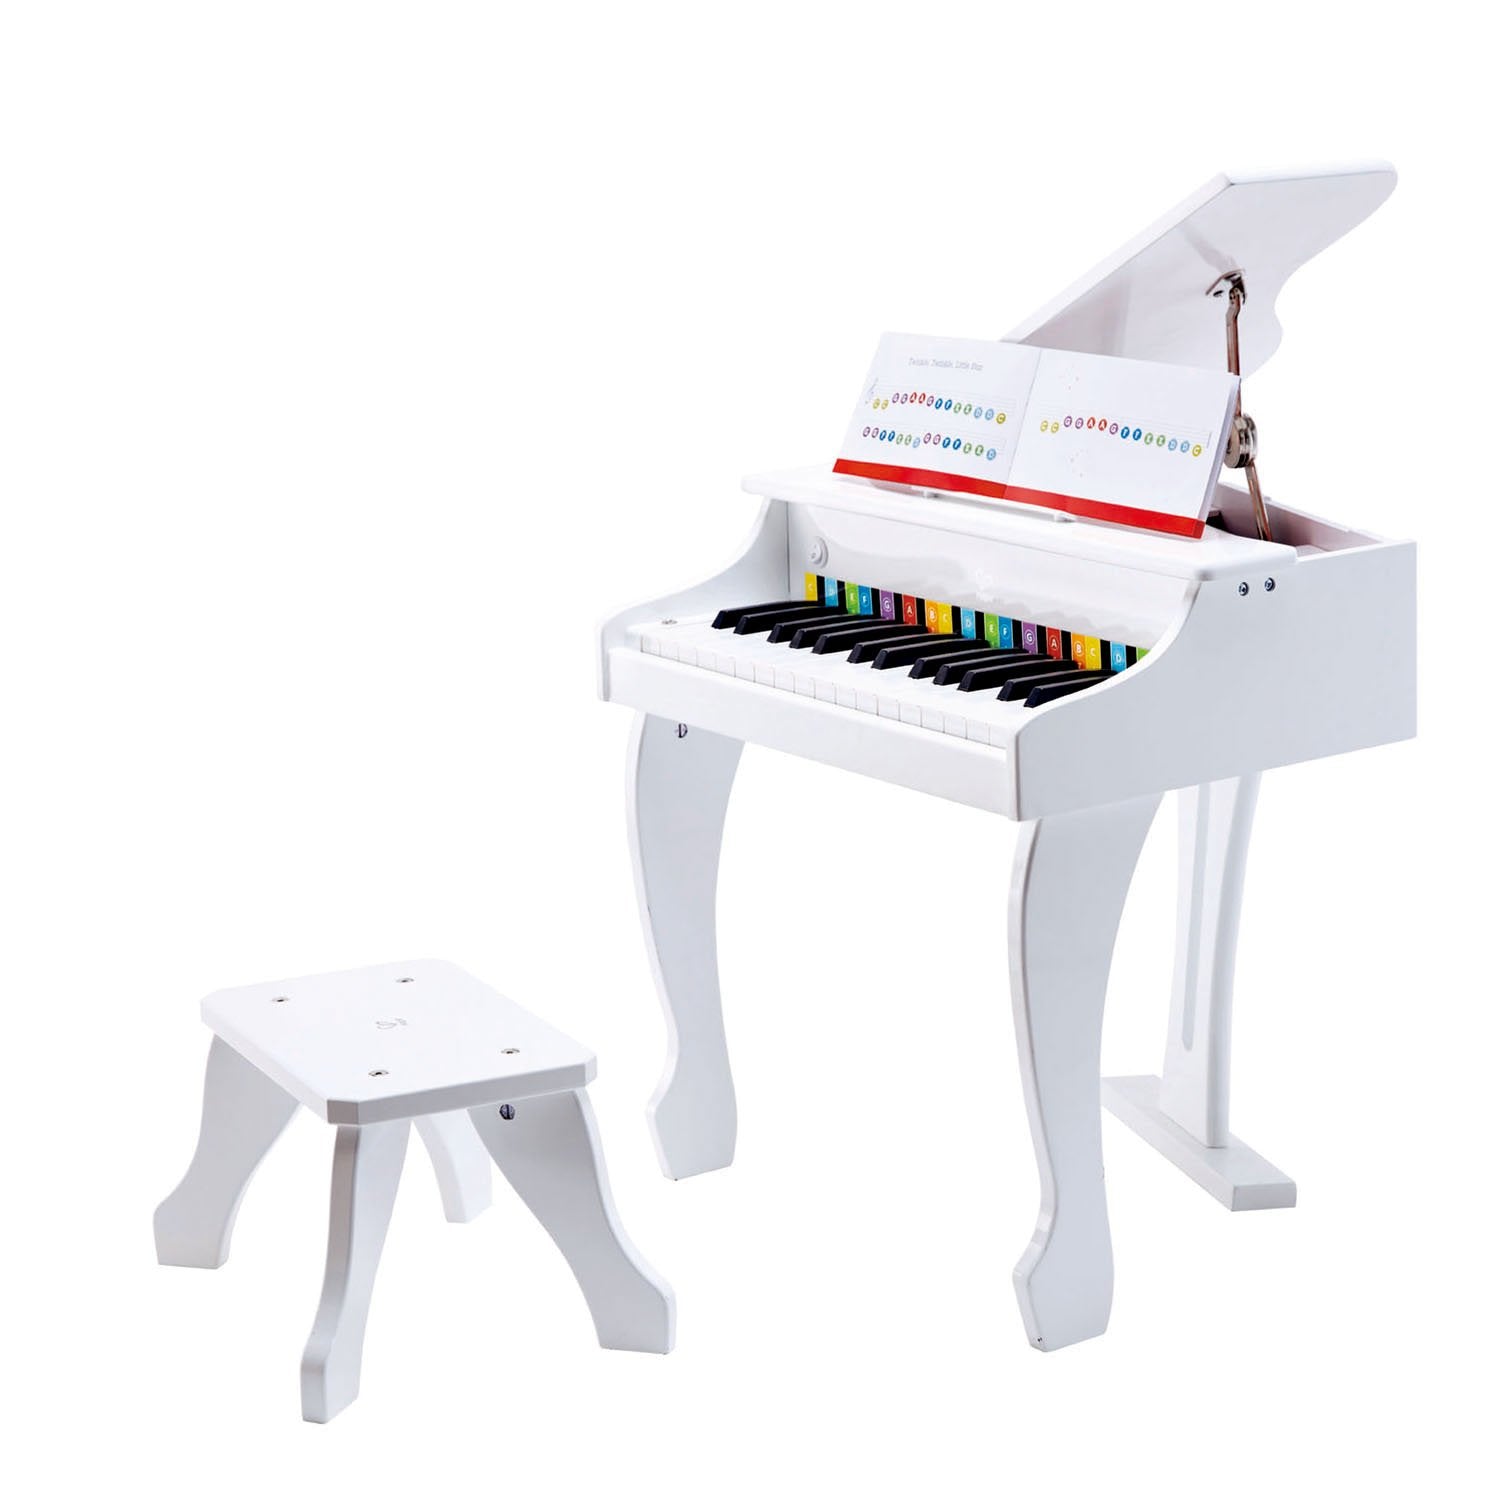 Hape Deluxe Grand Piano (White)